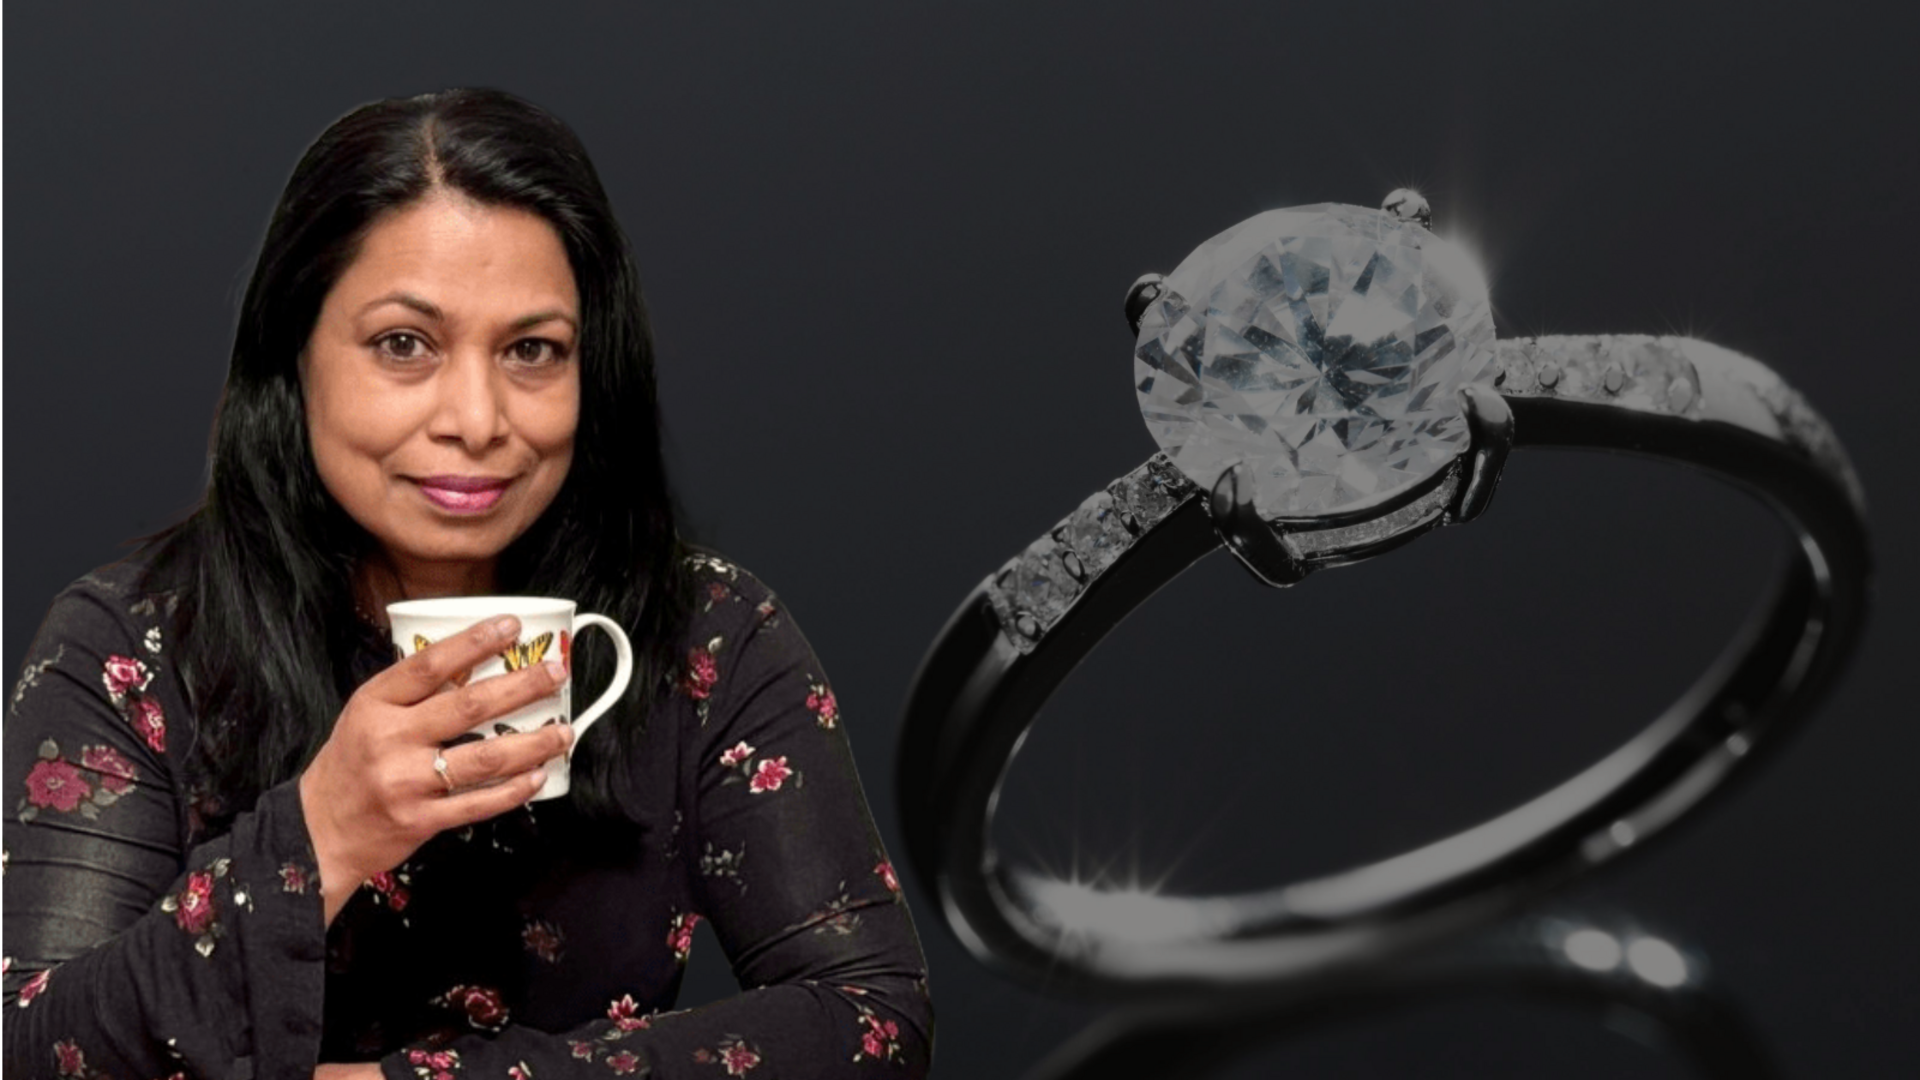 UK: डॉक्टर से खो गई थी हीरे की अंगूठी, 160 किलोमीटर सफर तय कर वापस मिली